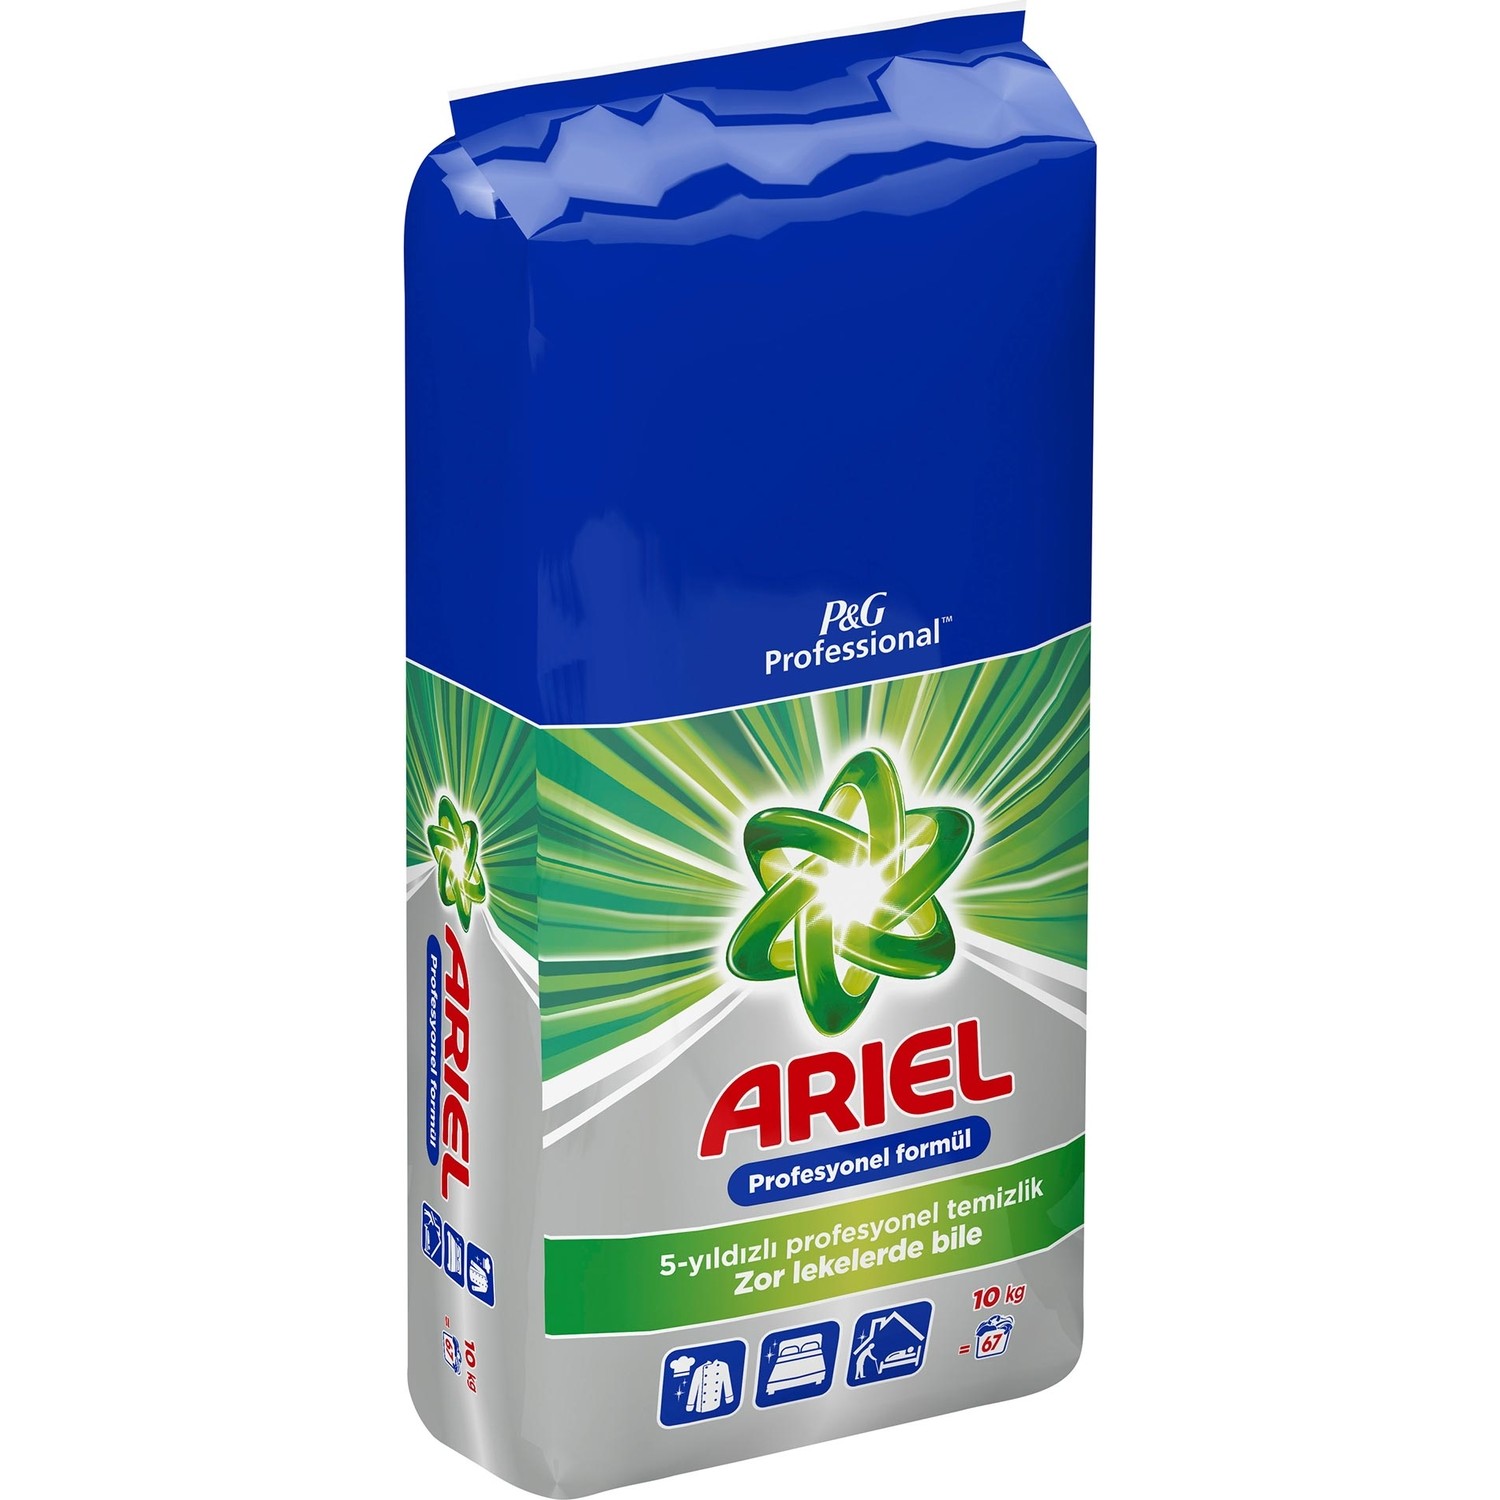 Ariel Professional 10 Kg Toz Çamaşır Deterjanı PGP Fiyatı